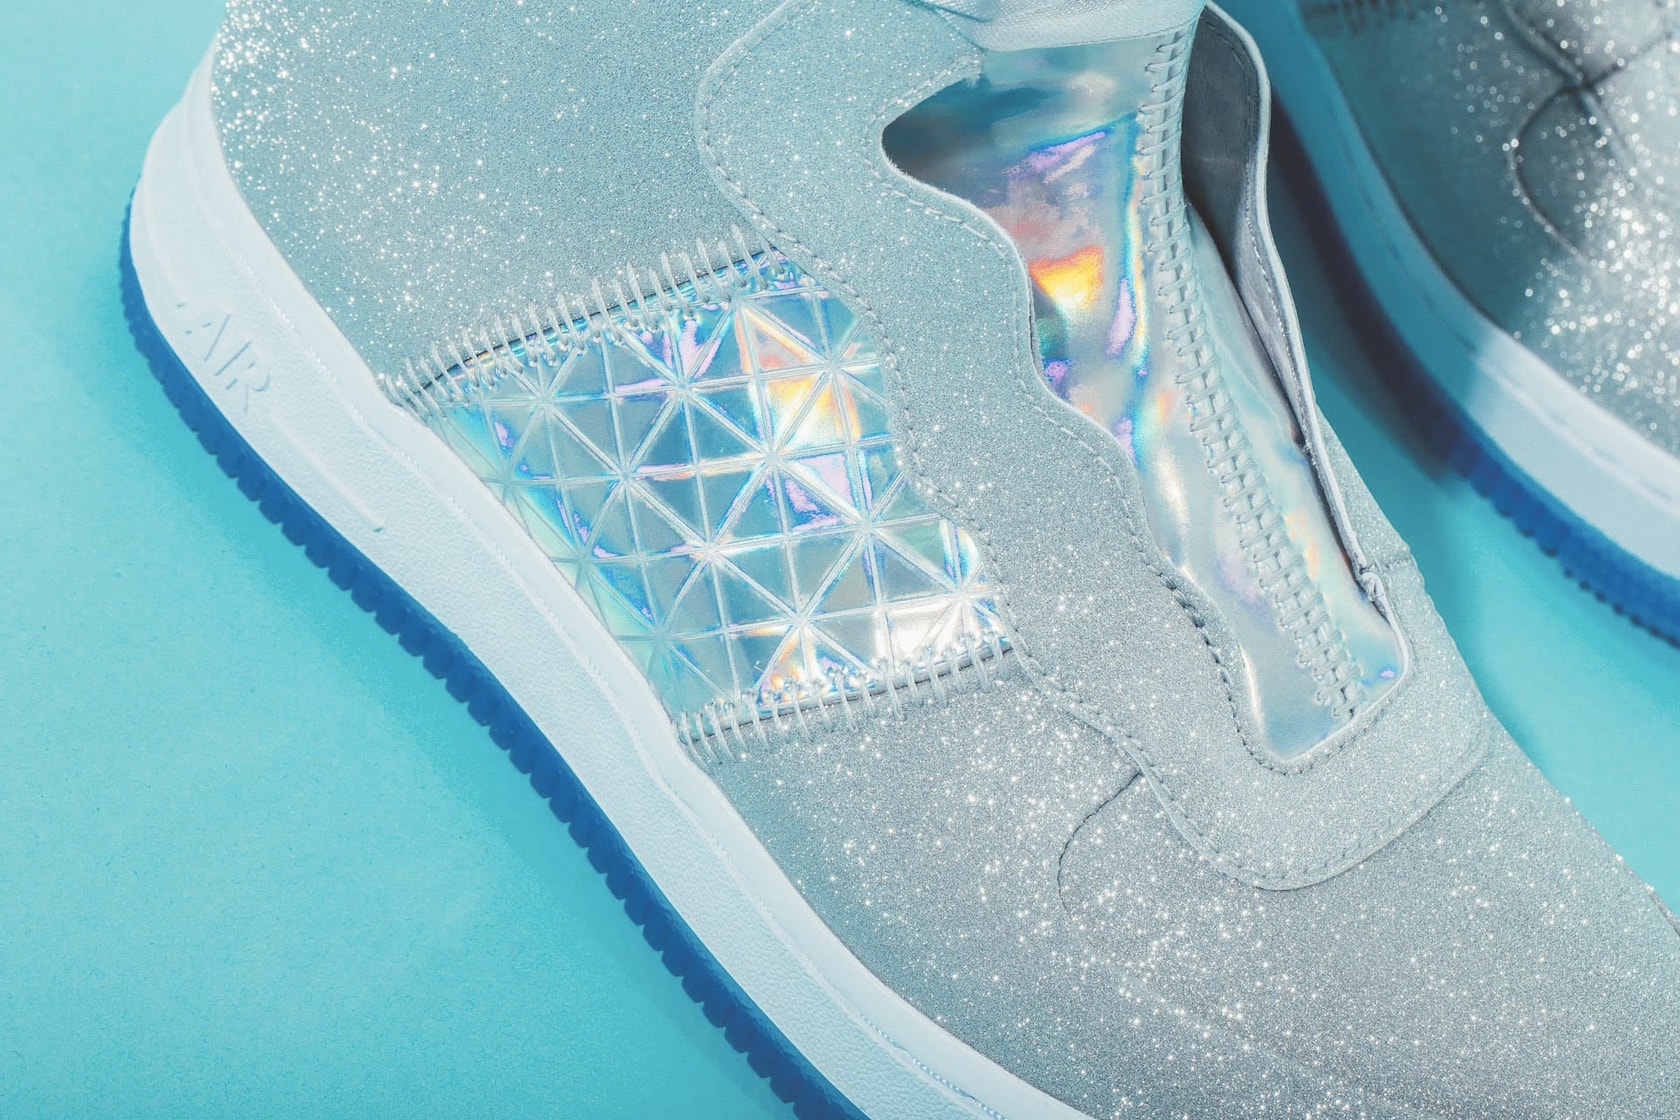 Nike Air Force 1 REBEL XX Silver Glitter Release Sneaker Shoe Footwear Trainer Sparkly Statement Streetwear